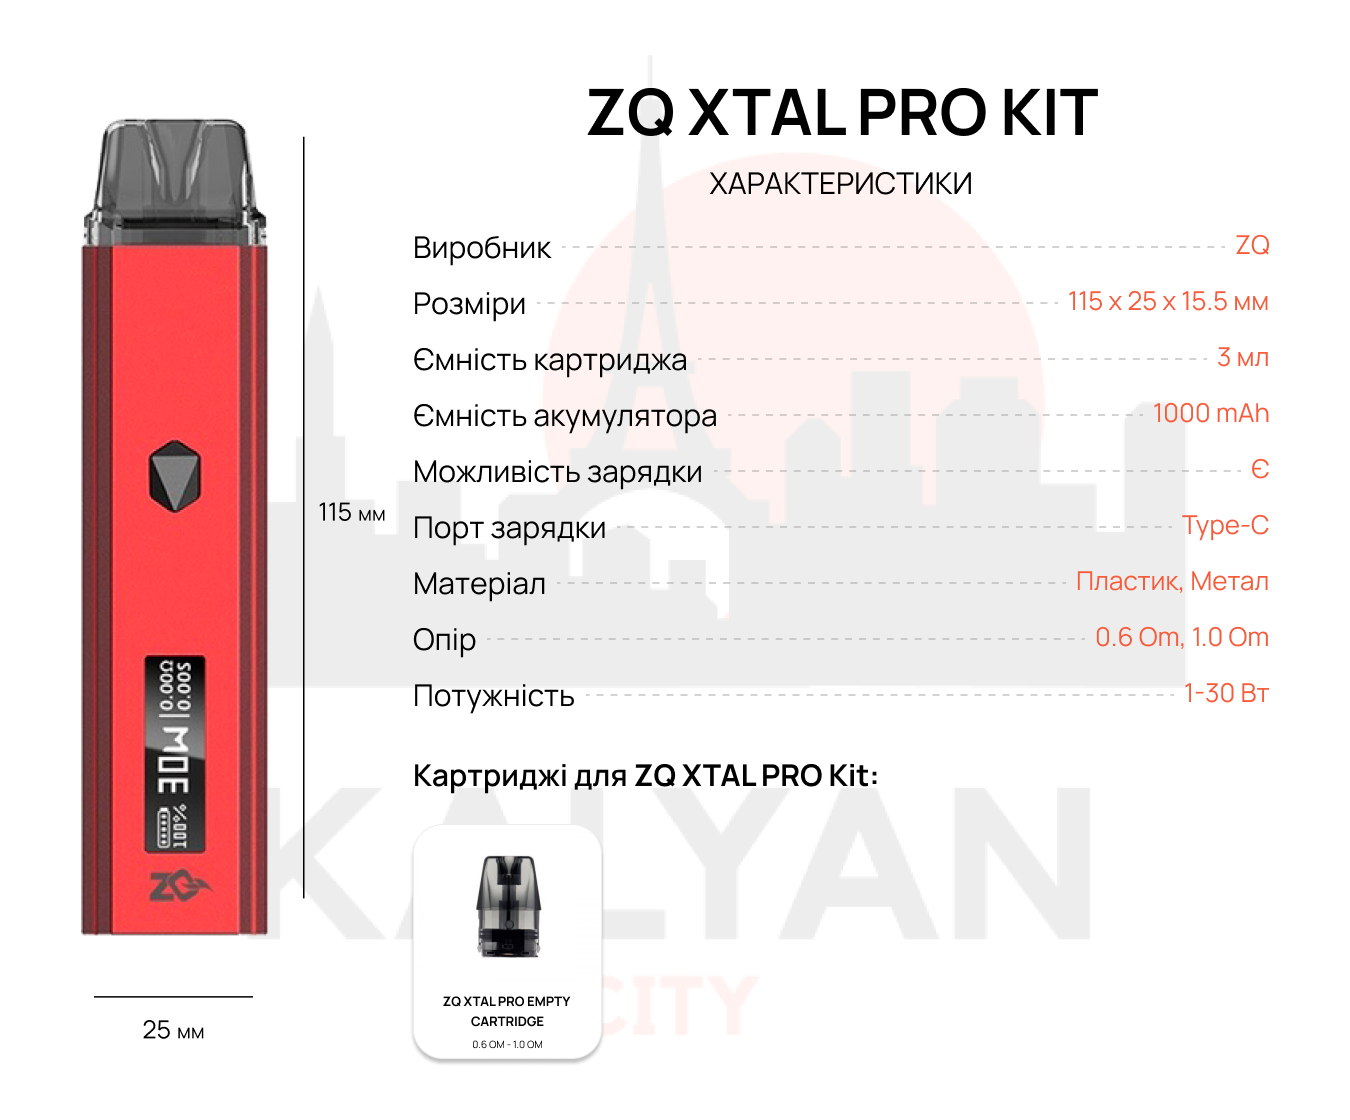 ZQ XTAL Pro Kit Характеристики